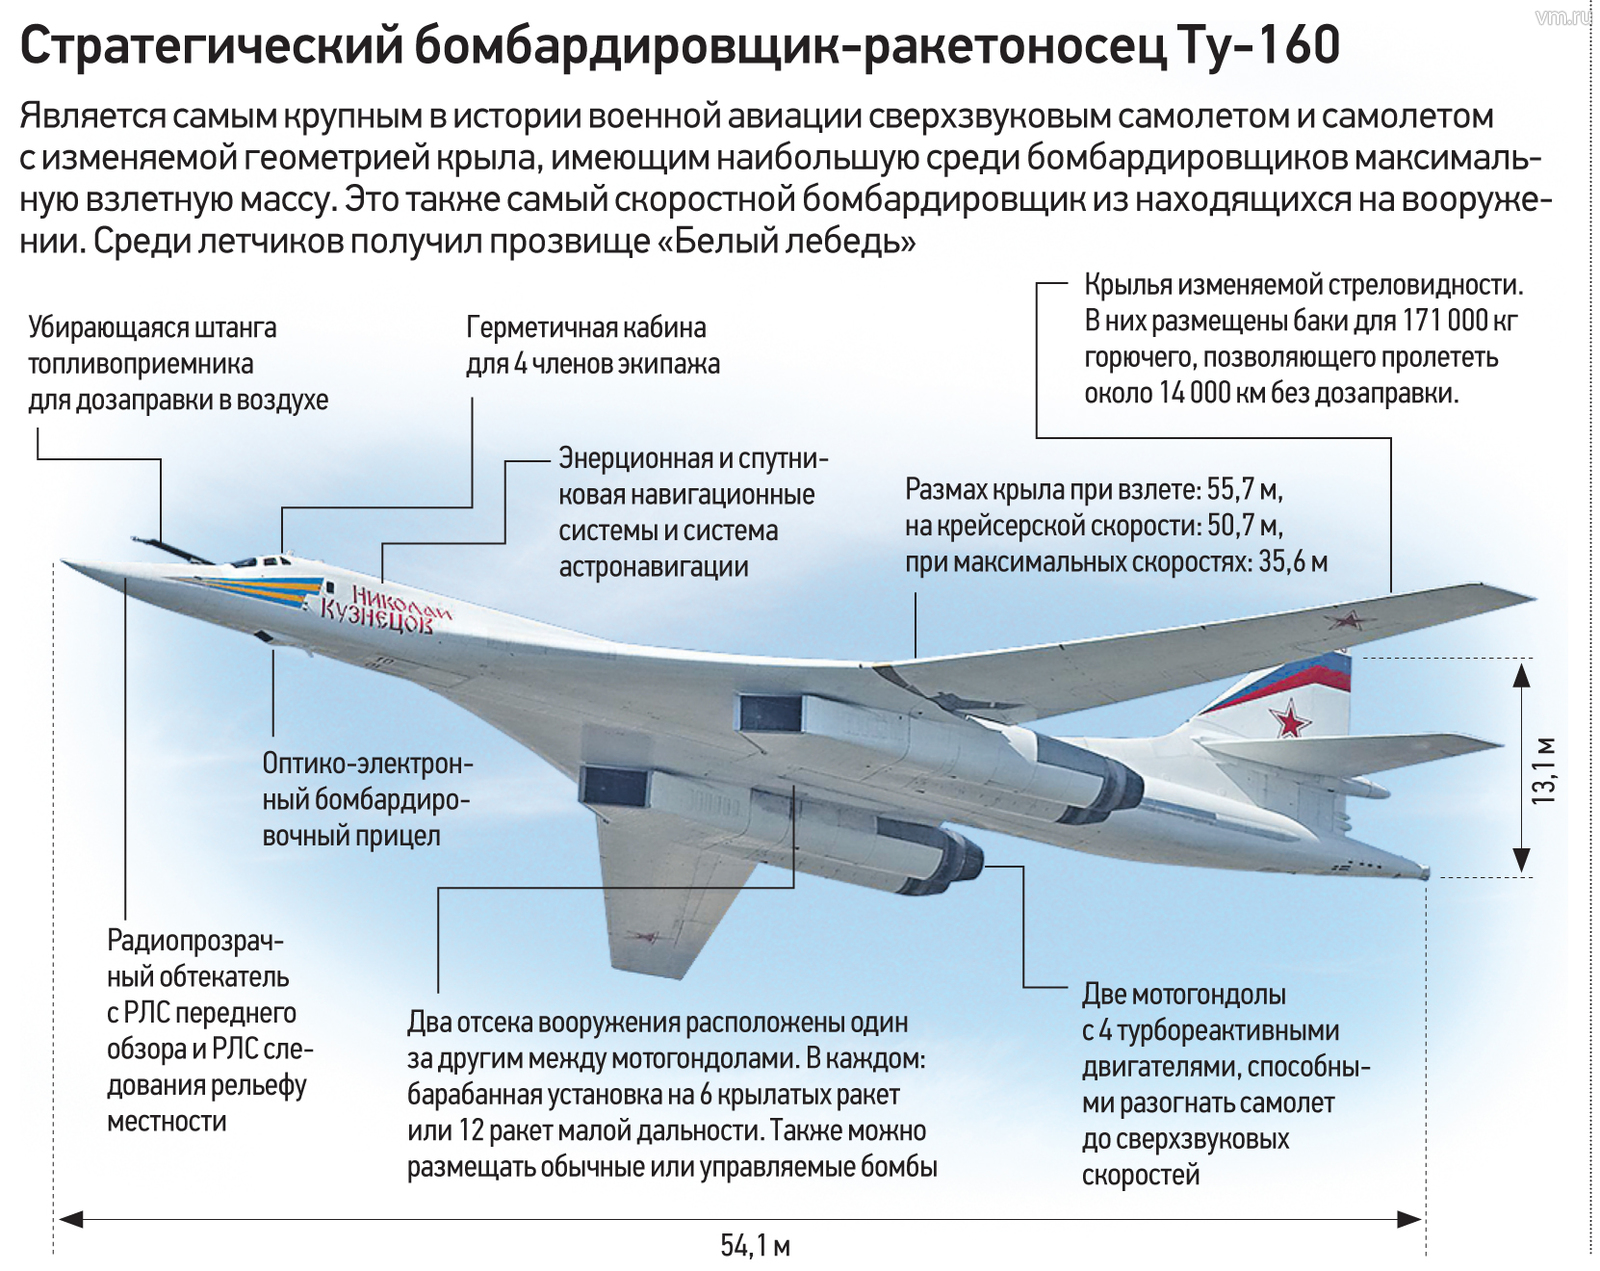 Ту 160 сверхзвуковой характеристики. Ту-160 вид сбоку. Белый лебедь самолет ту 160. Белый лебедь самолет ту 160 характеристики. Стратегический ракетоносец ту-160 белый лебедь.